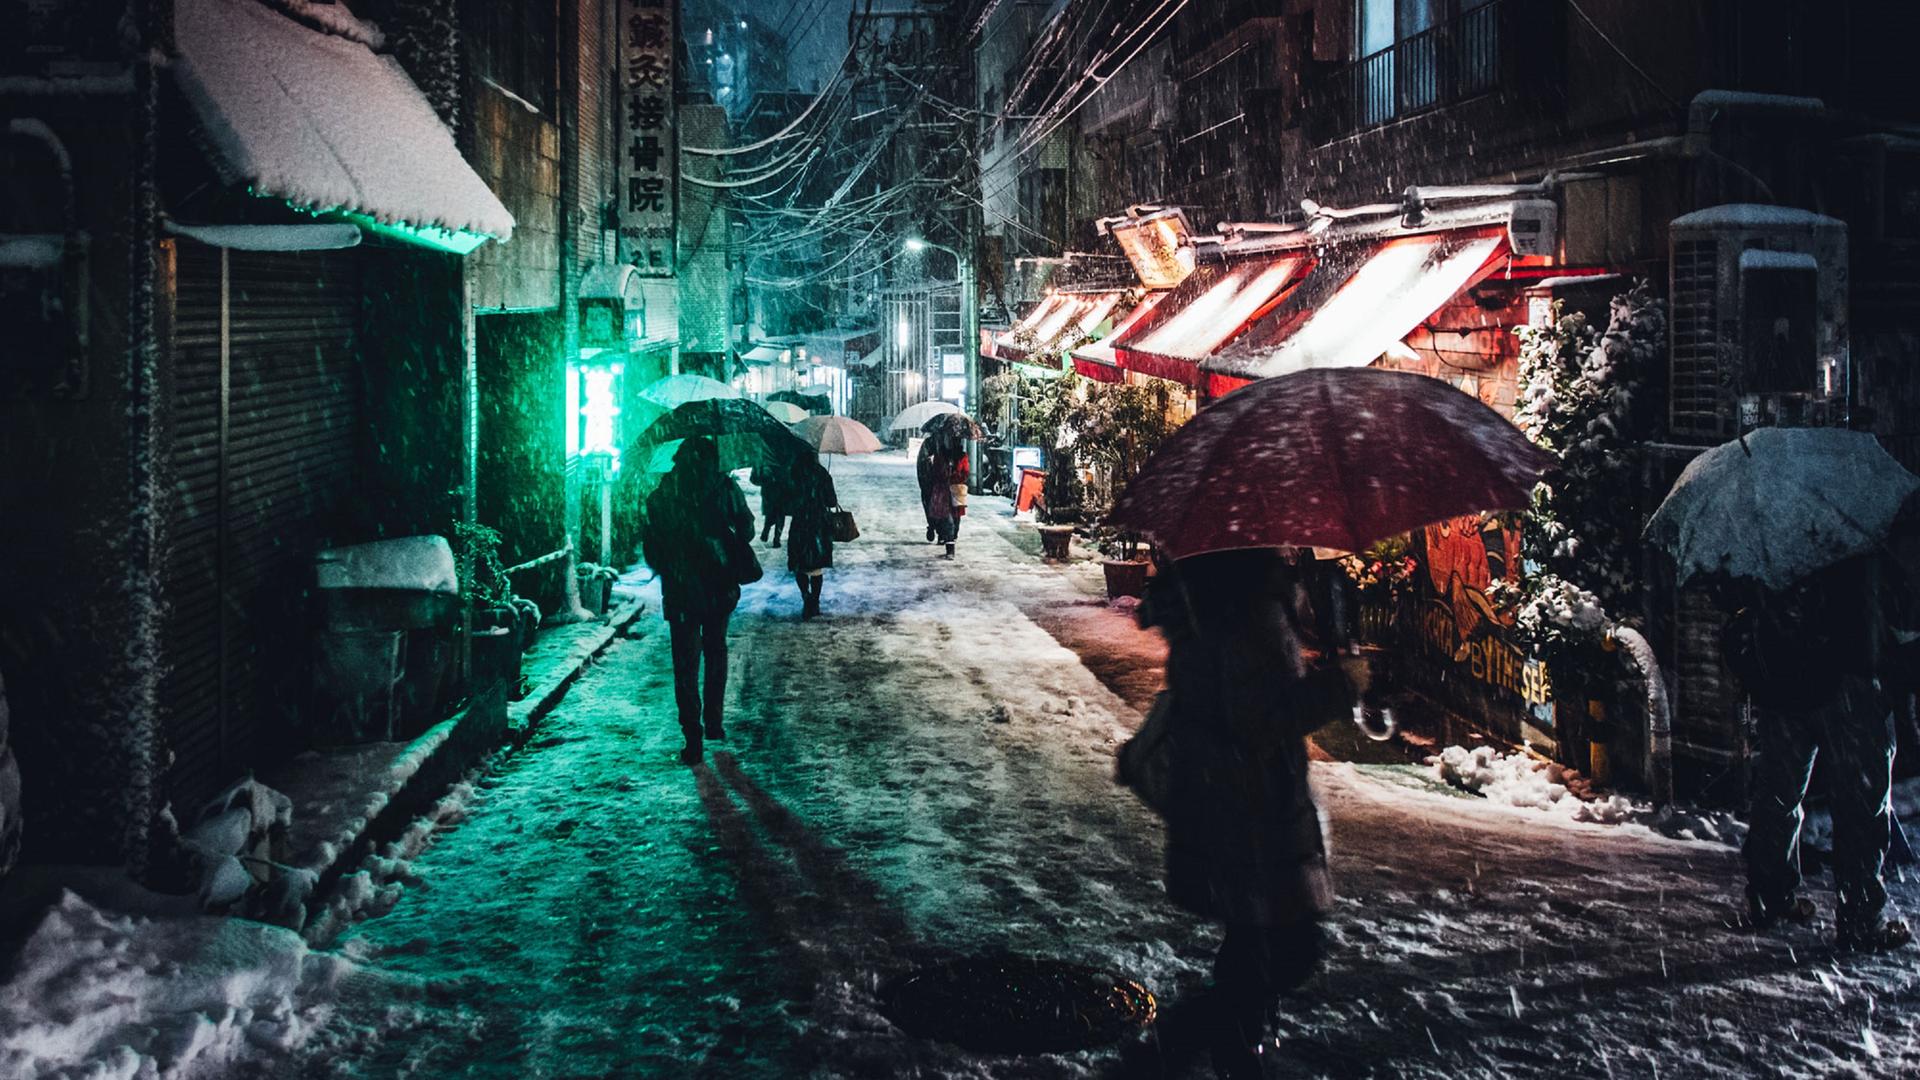 Menschen mit Regenschirmen gehen abends im Schirm durch eine kleine Straße in Tokio.